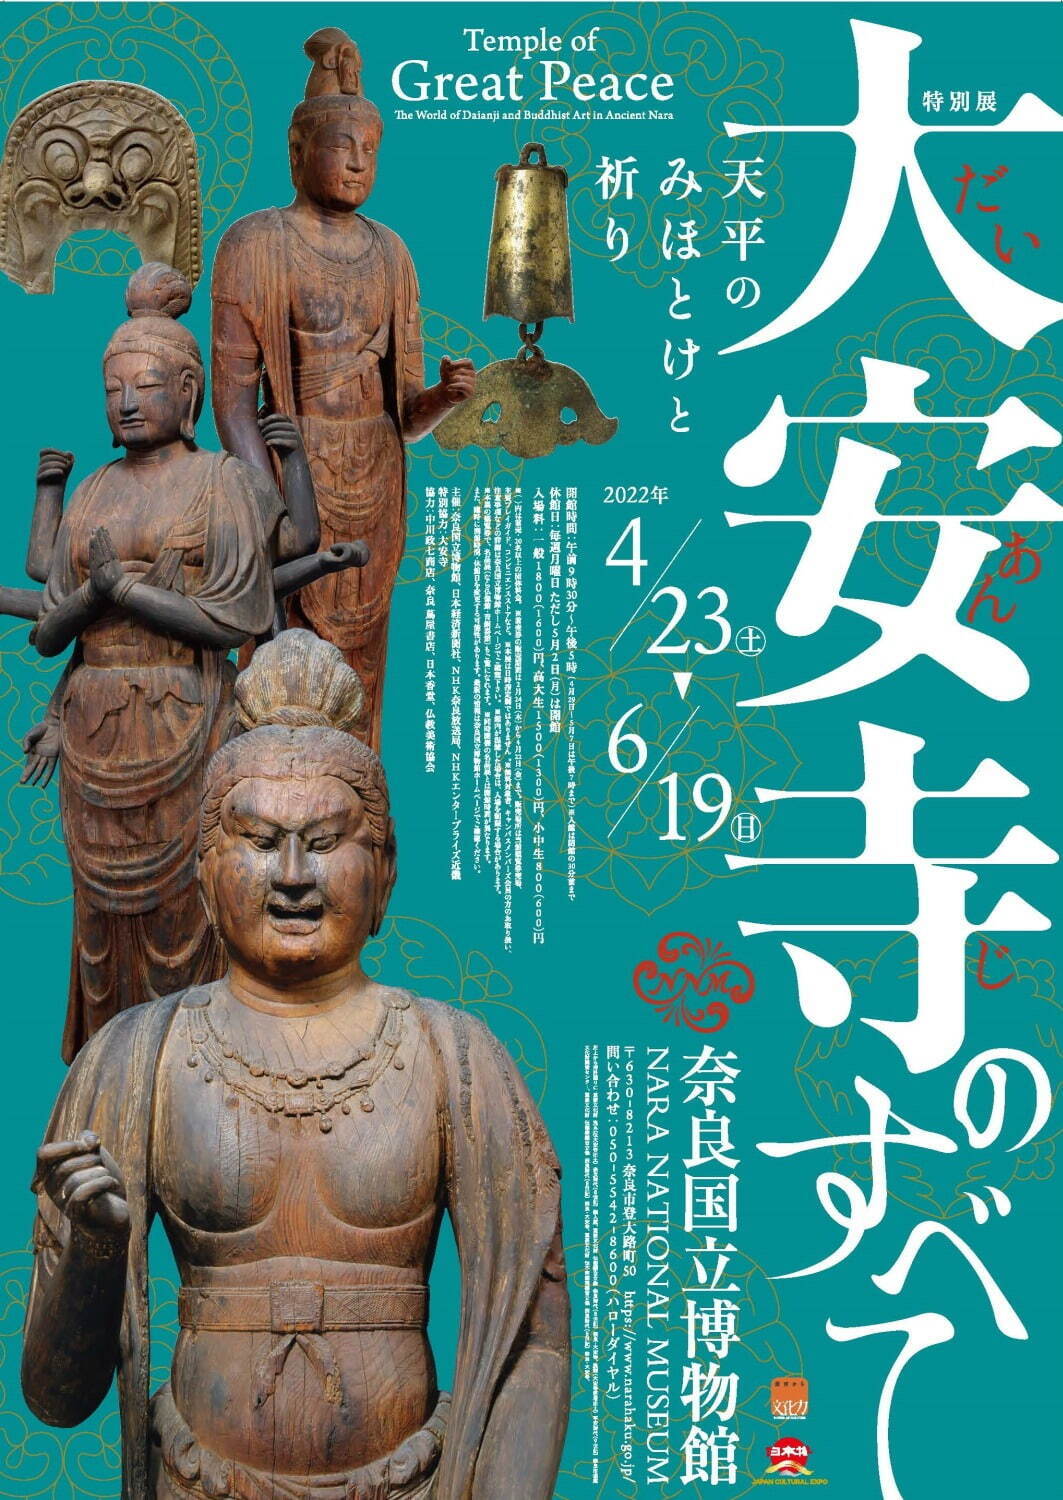 特別展「大安寺のすべて」奈良国立博物館で - 奈良時代を牽引した大 